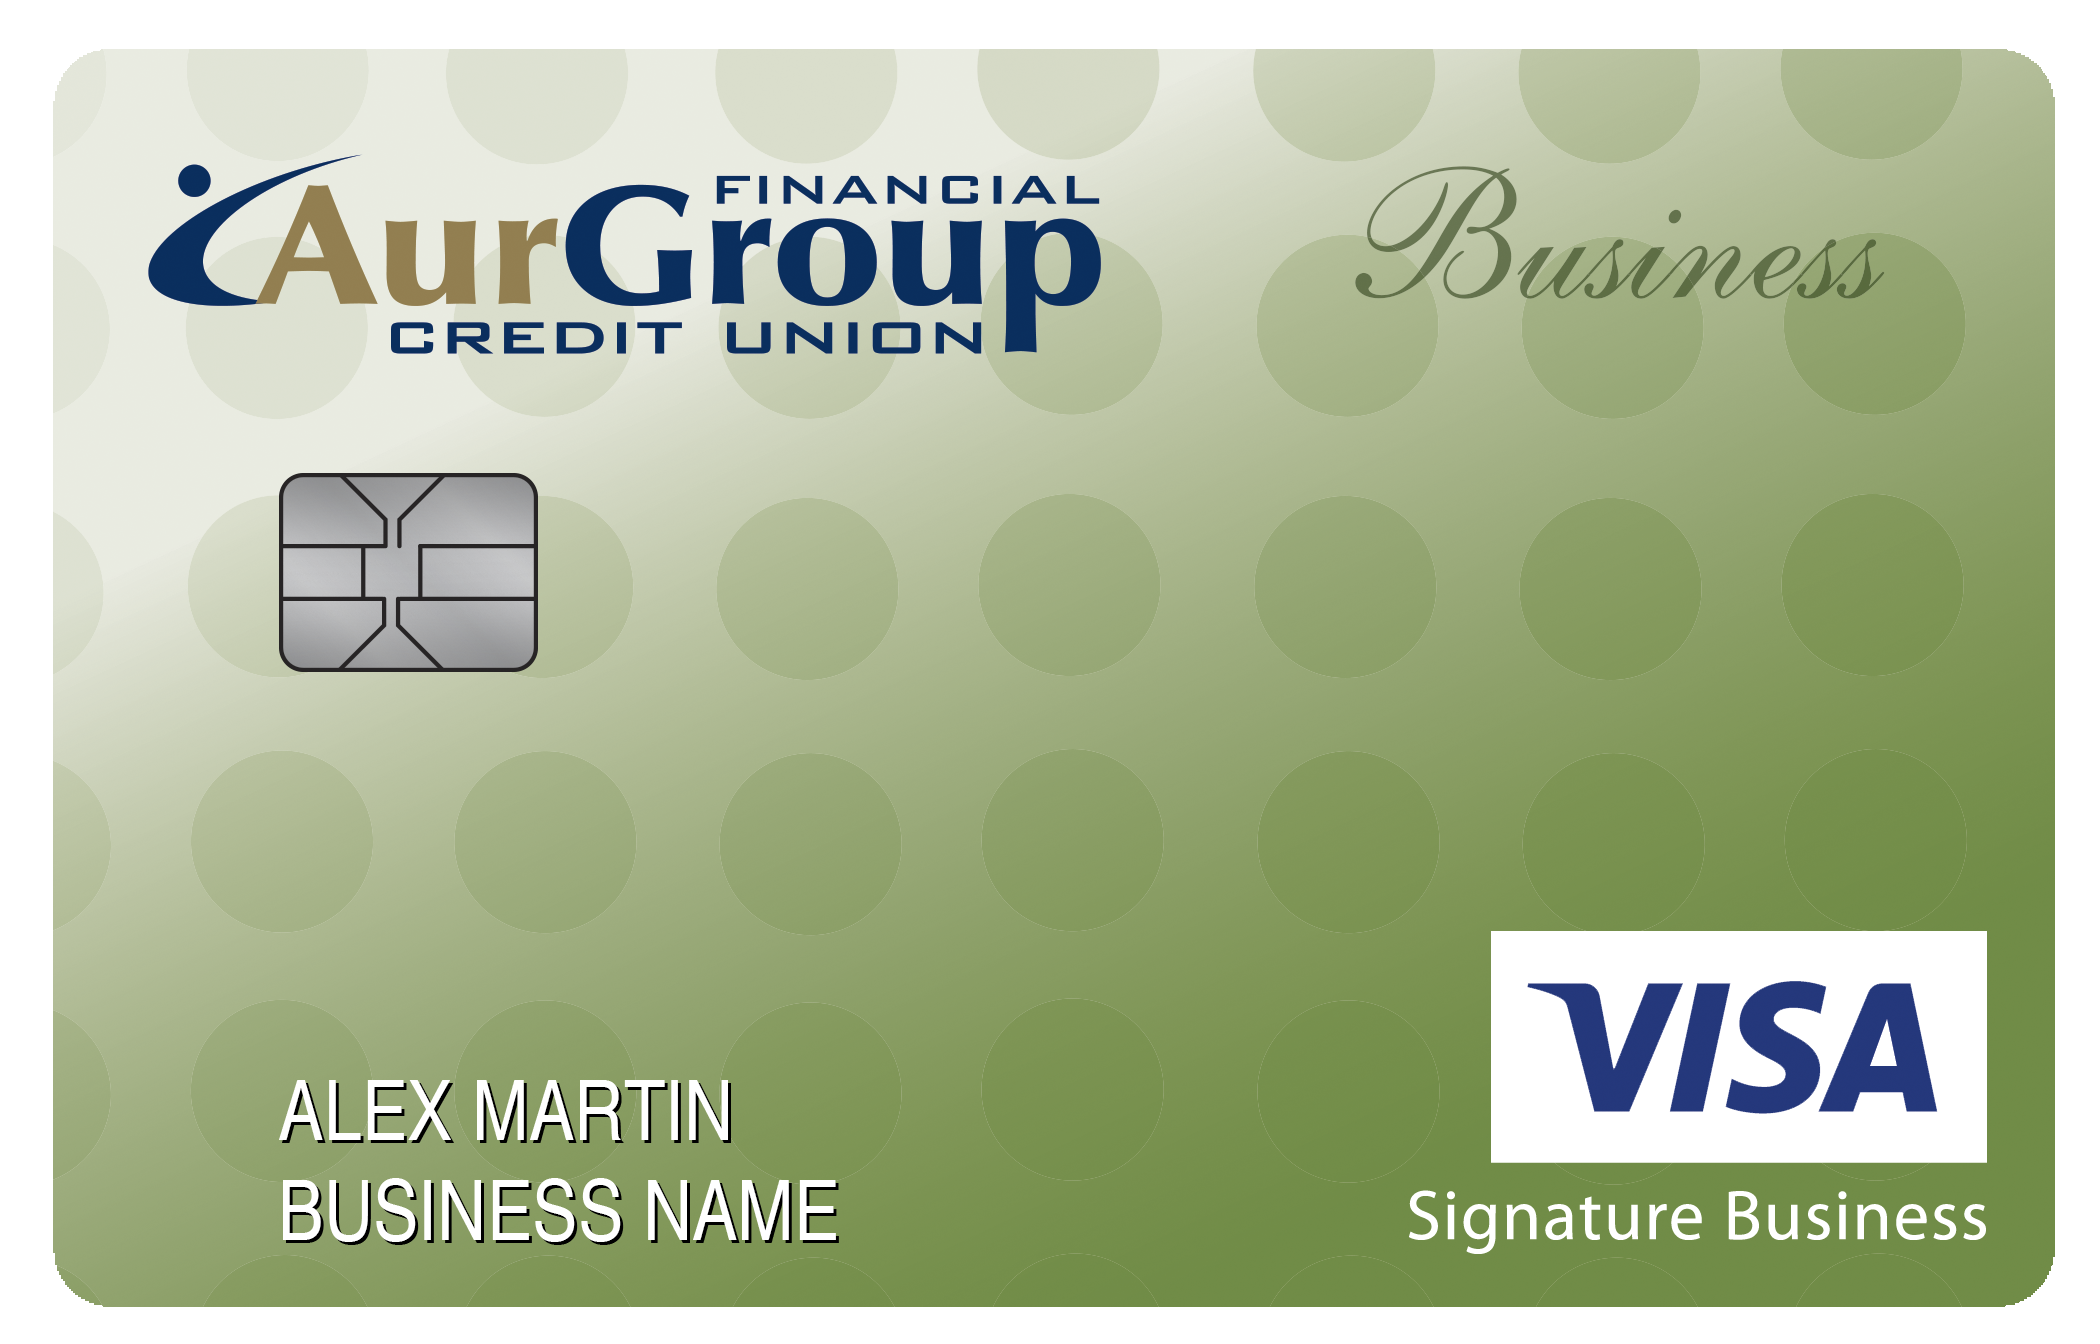 AurGroup Financial Credit Union Smart Business Rewards Card